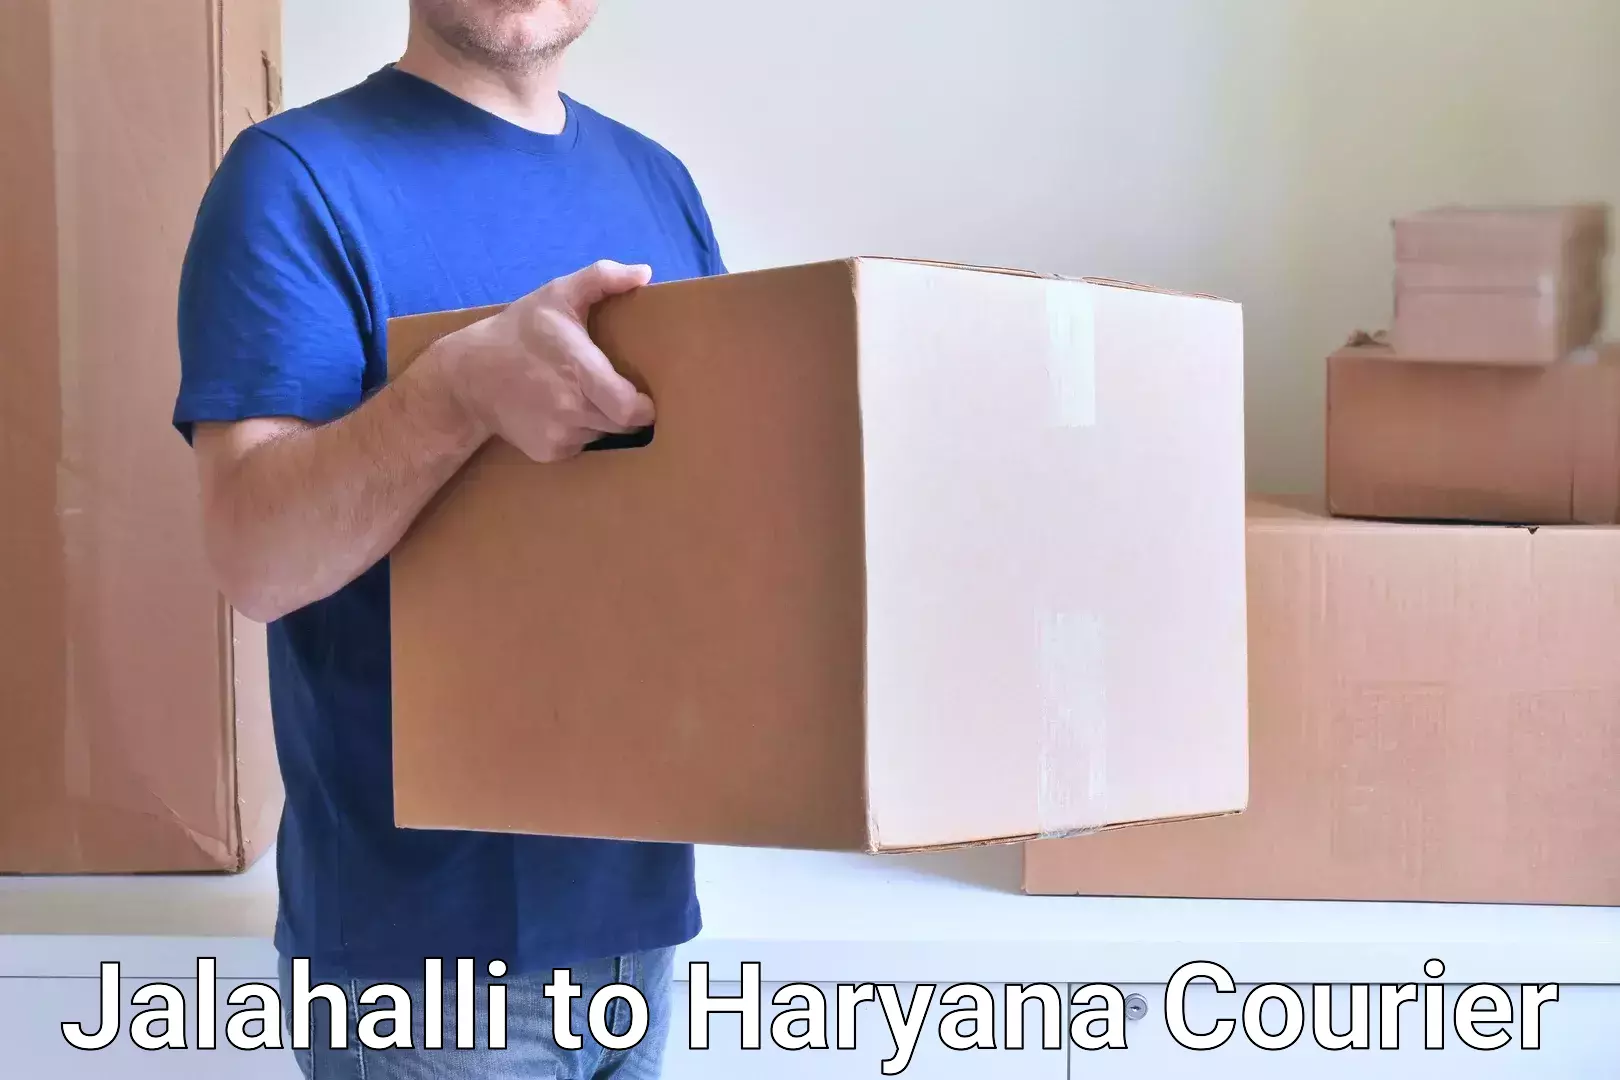 Next-generation courier services Jalahalli to Panipat